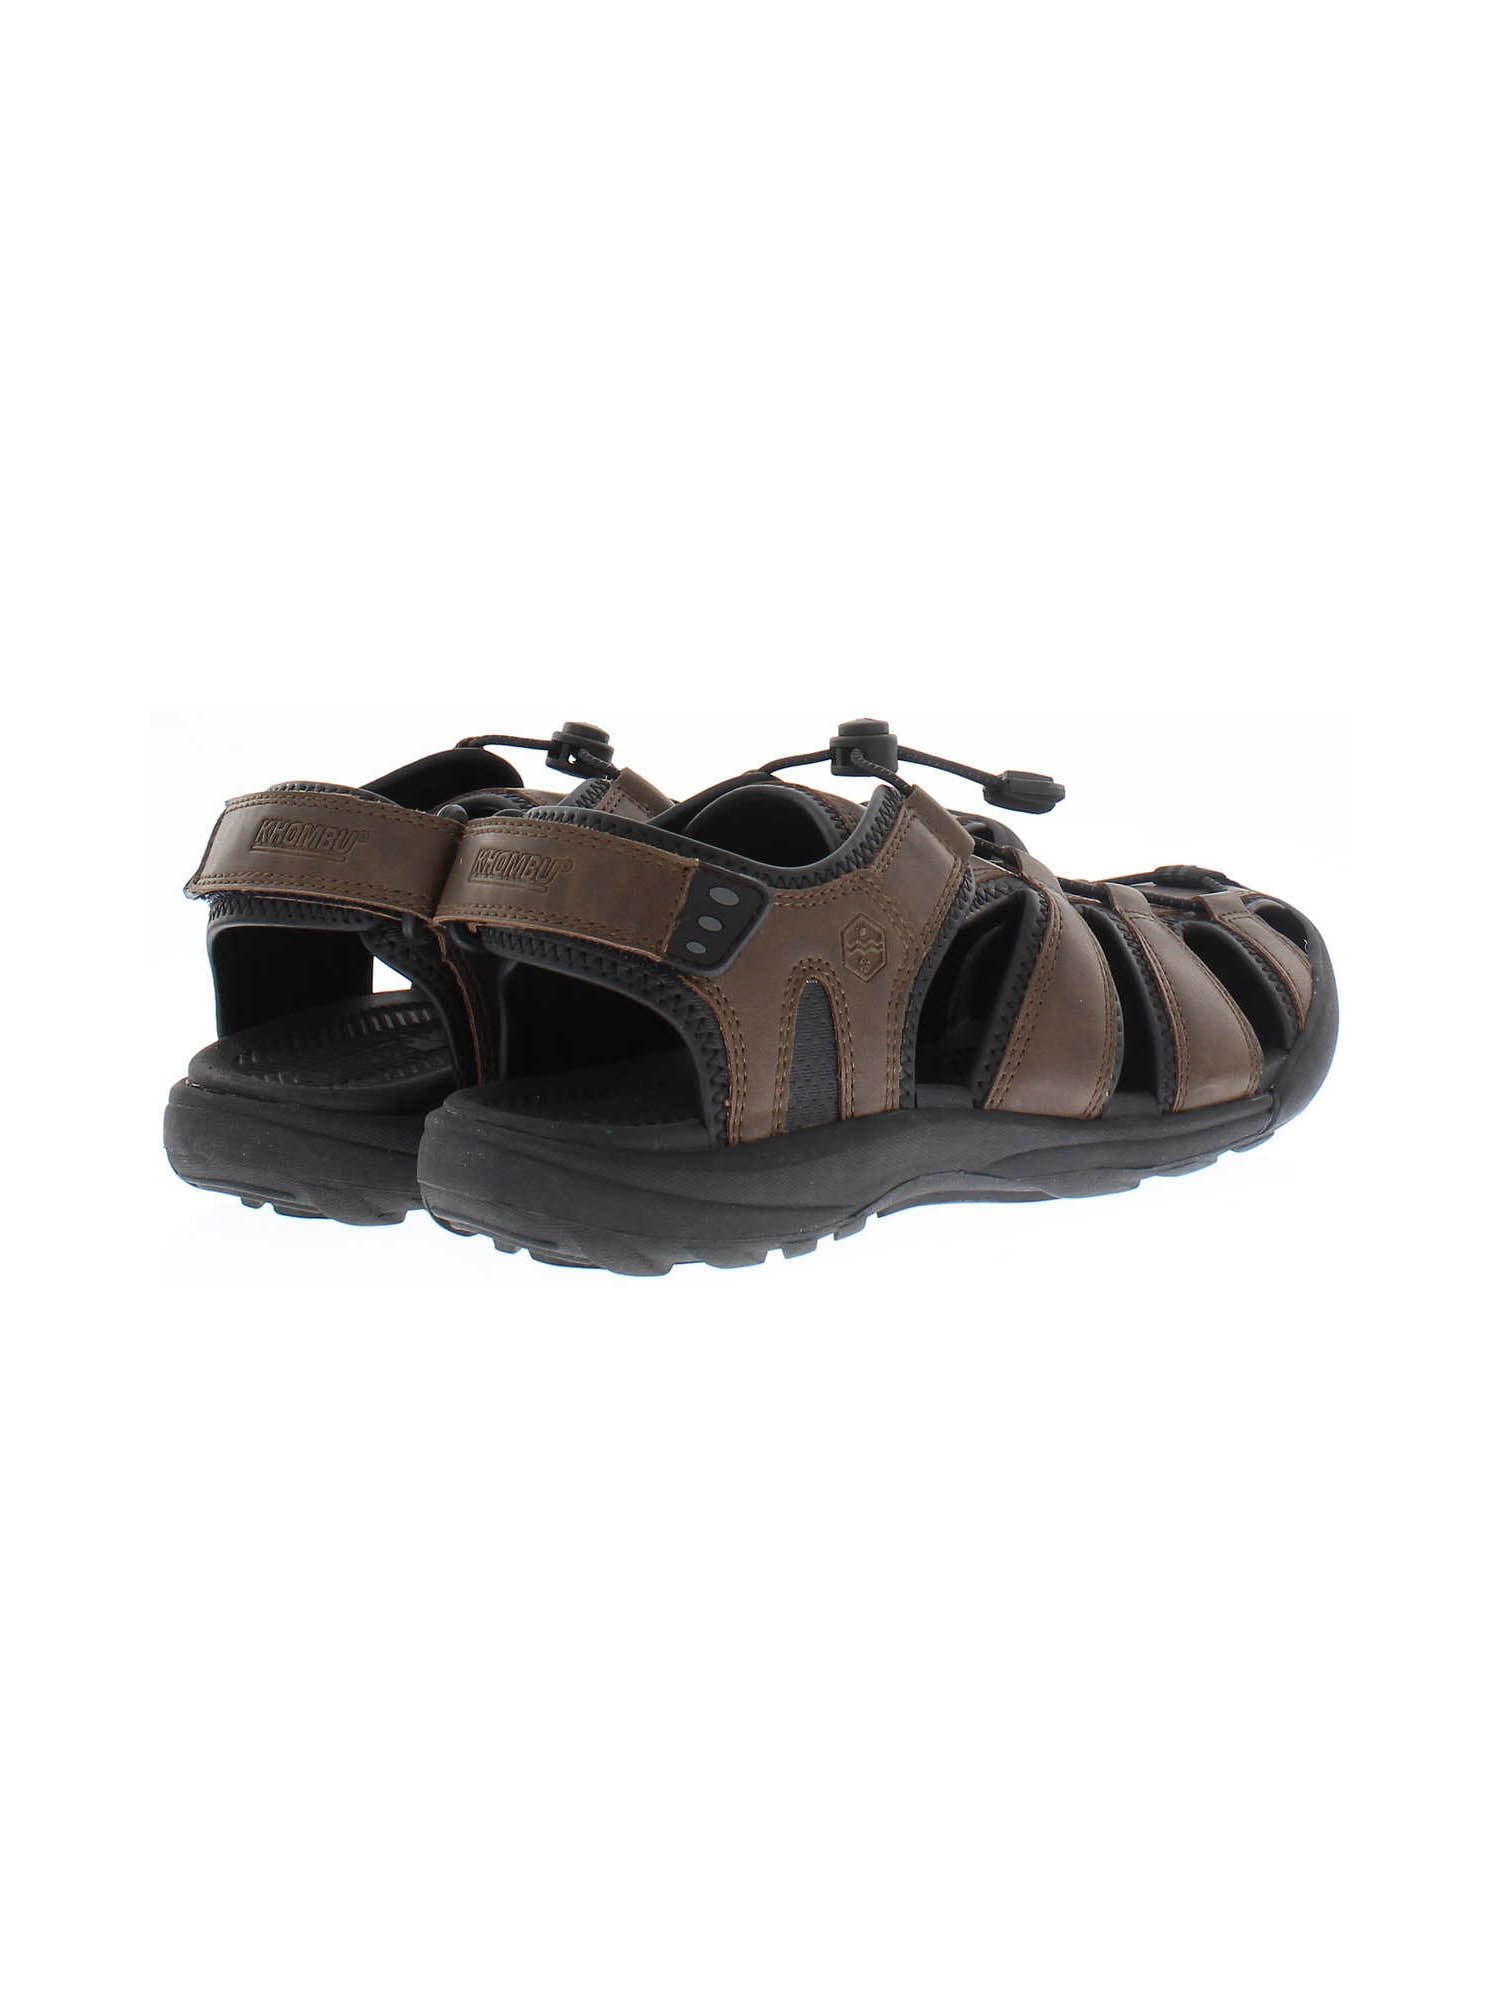 khombu sandals mens